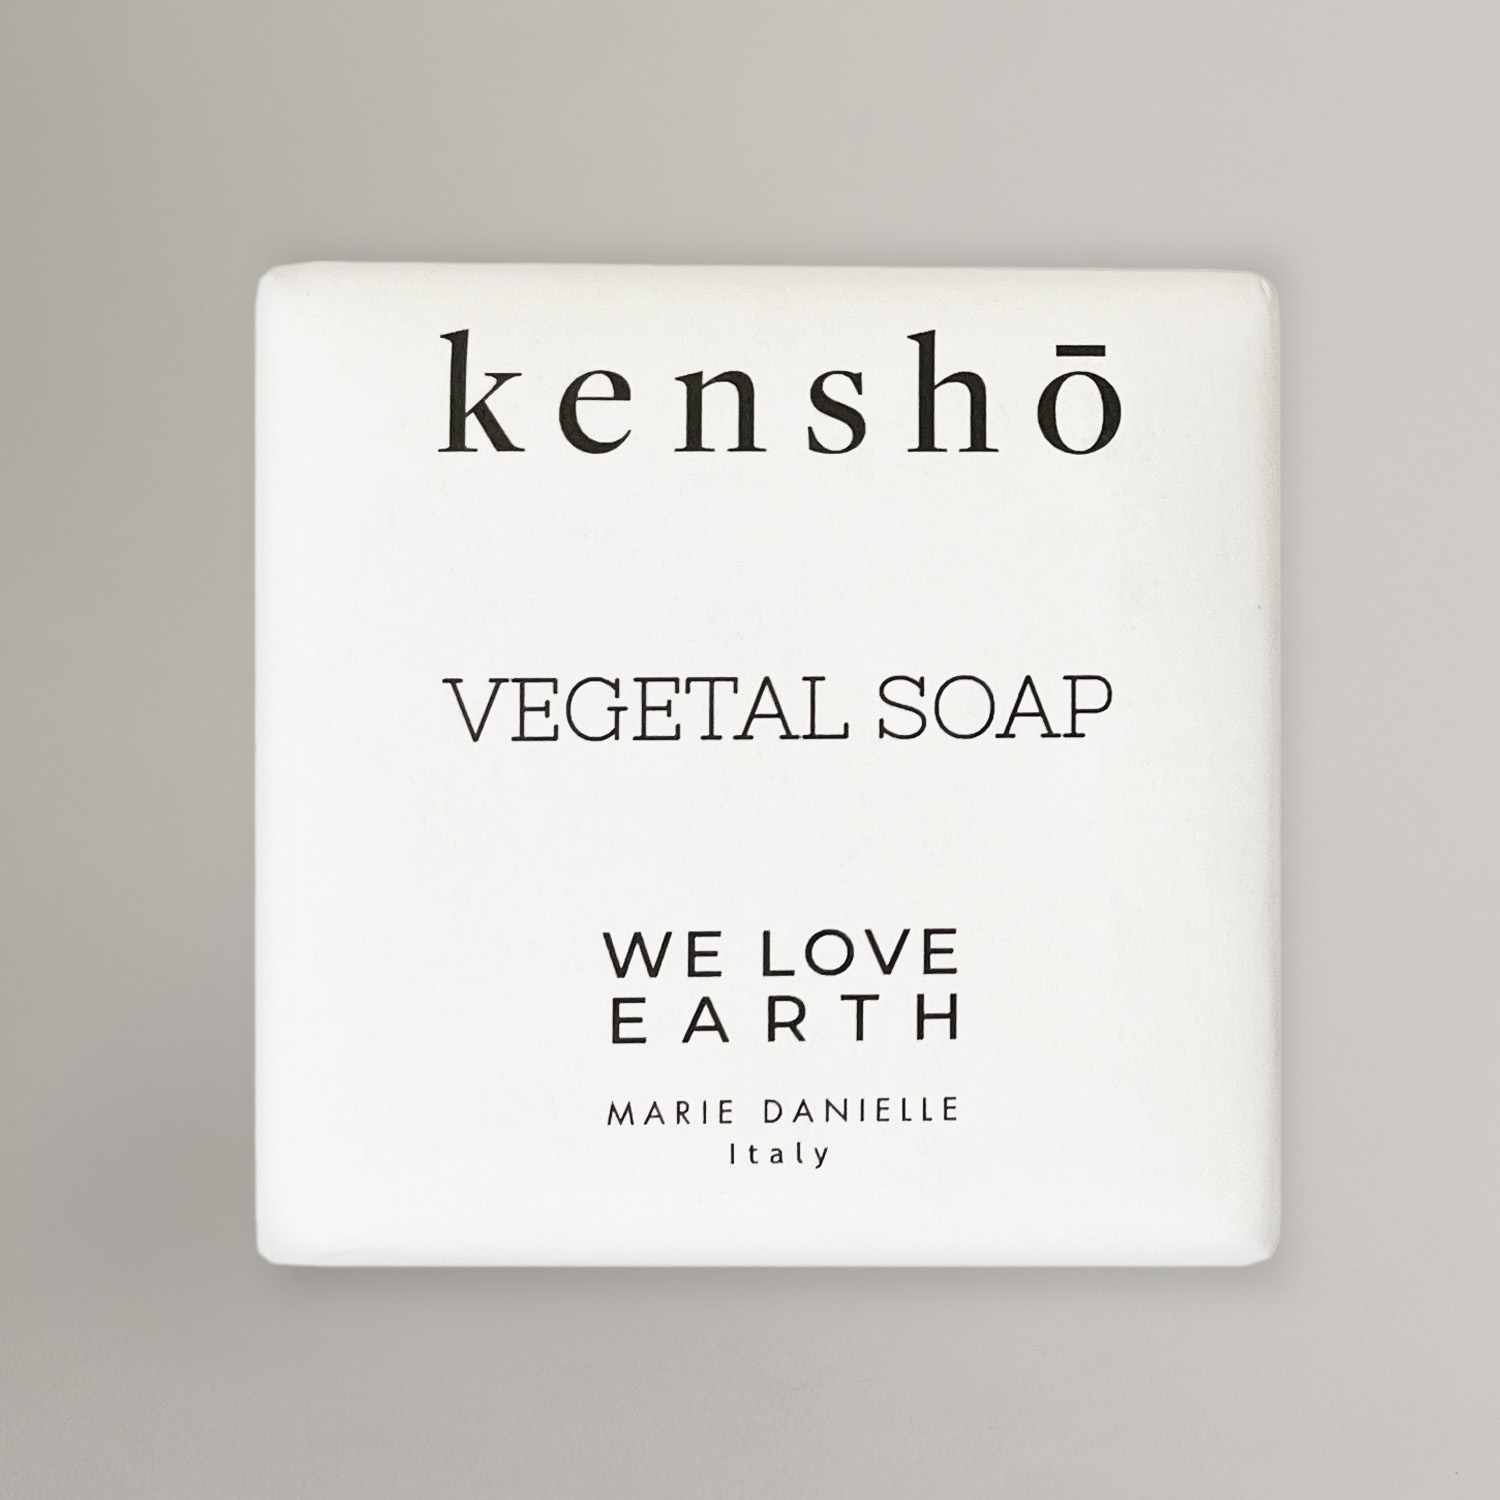 Tuhé mýdlo Kenshō 20g